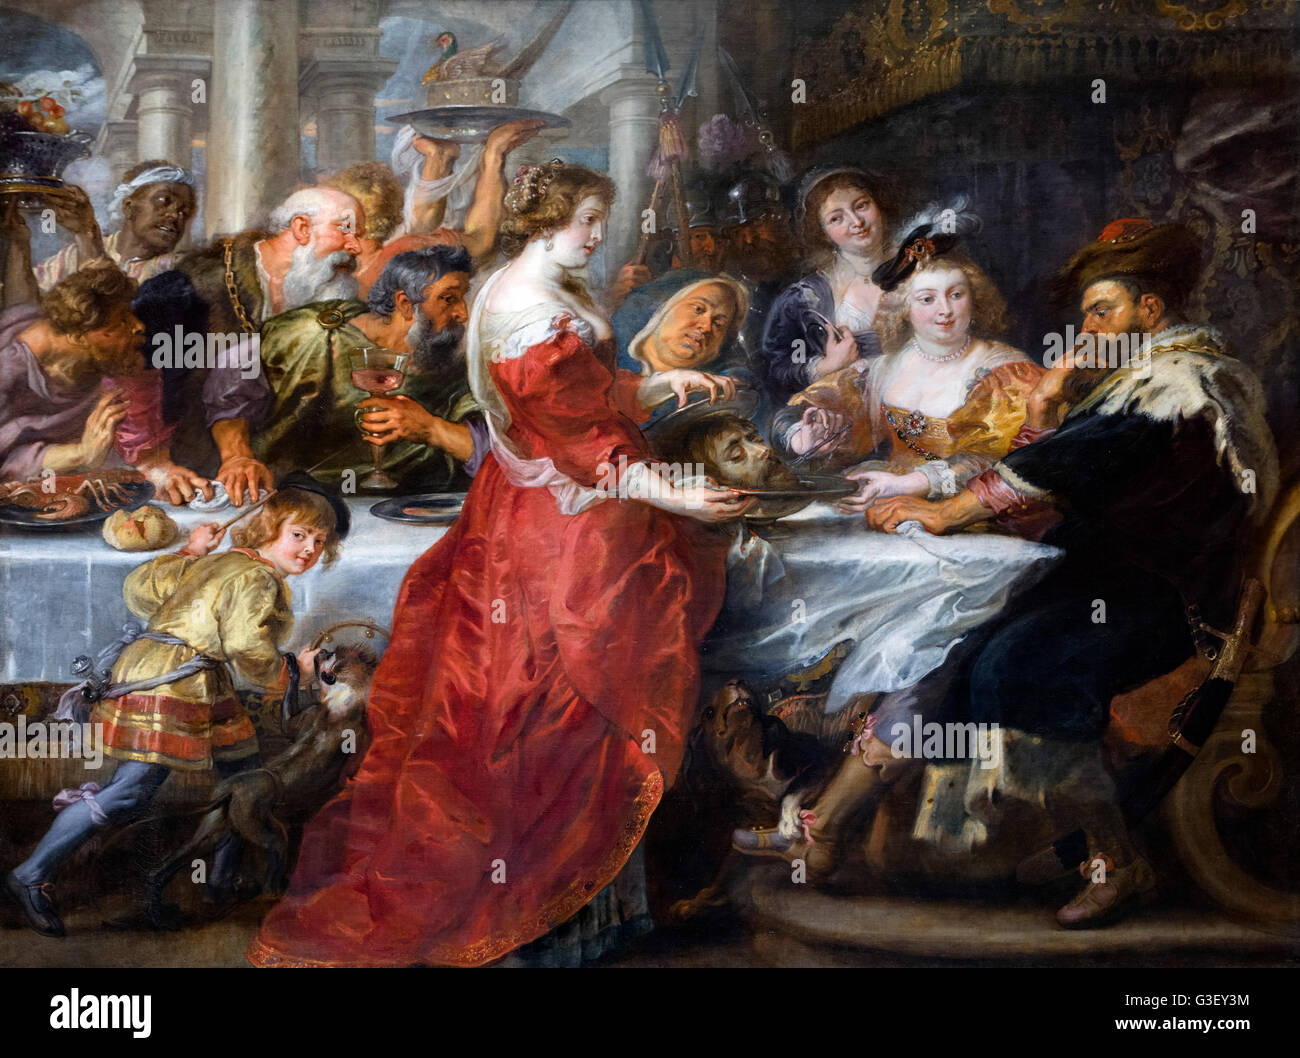 Il Banchetto di Erode di Sir Peter Paul Rubens (1577-1640), olio su tela, 1635-1638. Salomè presenta San Giovanni Battista la testa al re Erode come Erodiade, alla sua destra, pungoli Battista la lingua con una forchetta. Foto Stock